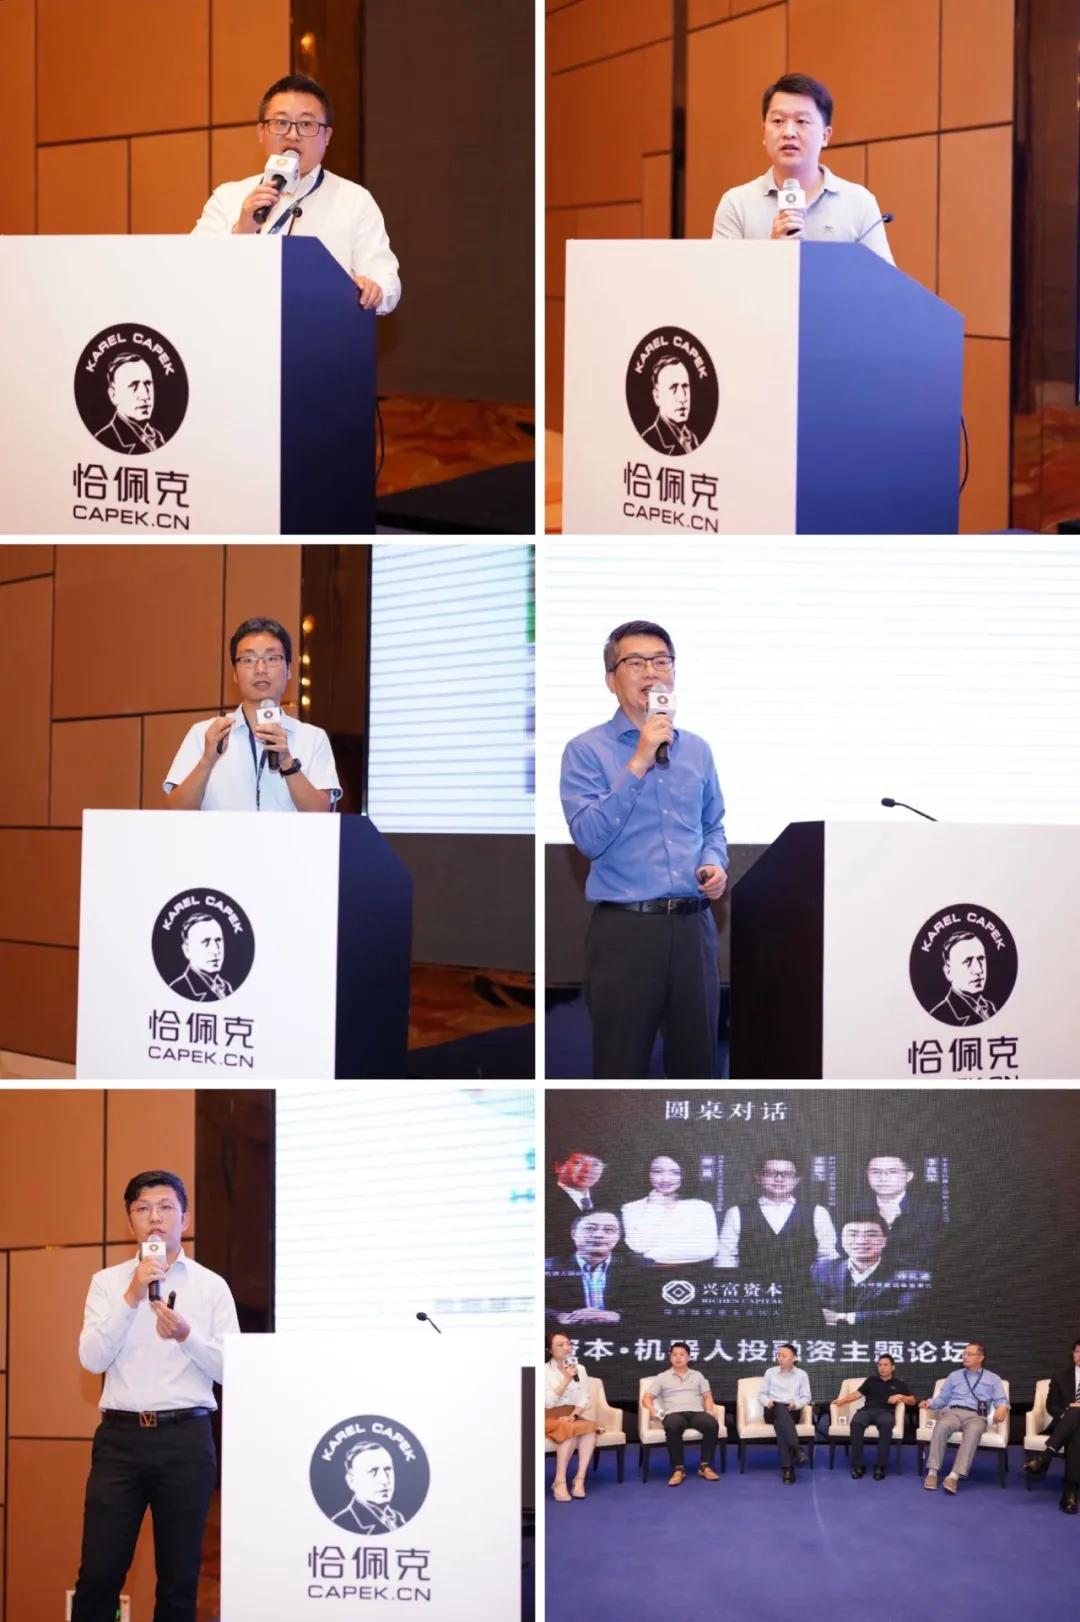 第六届恰佩克颁奖仪式暨第十届中国国际机器人高峰论坛在芜湖盛大举行